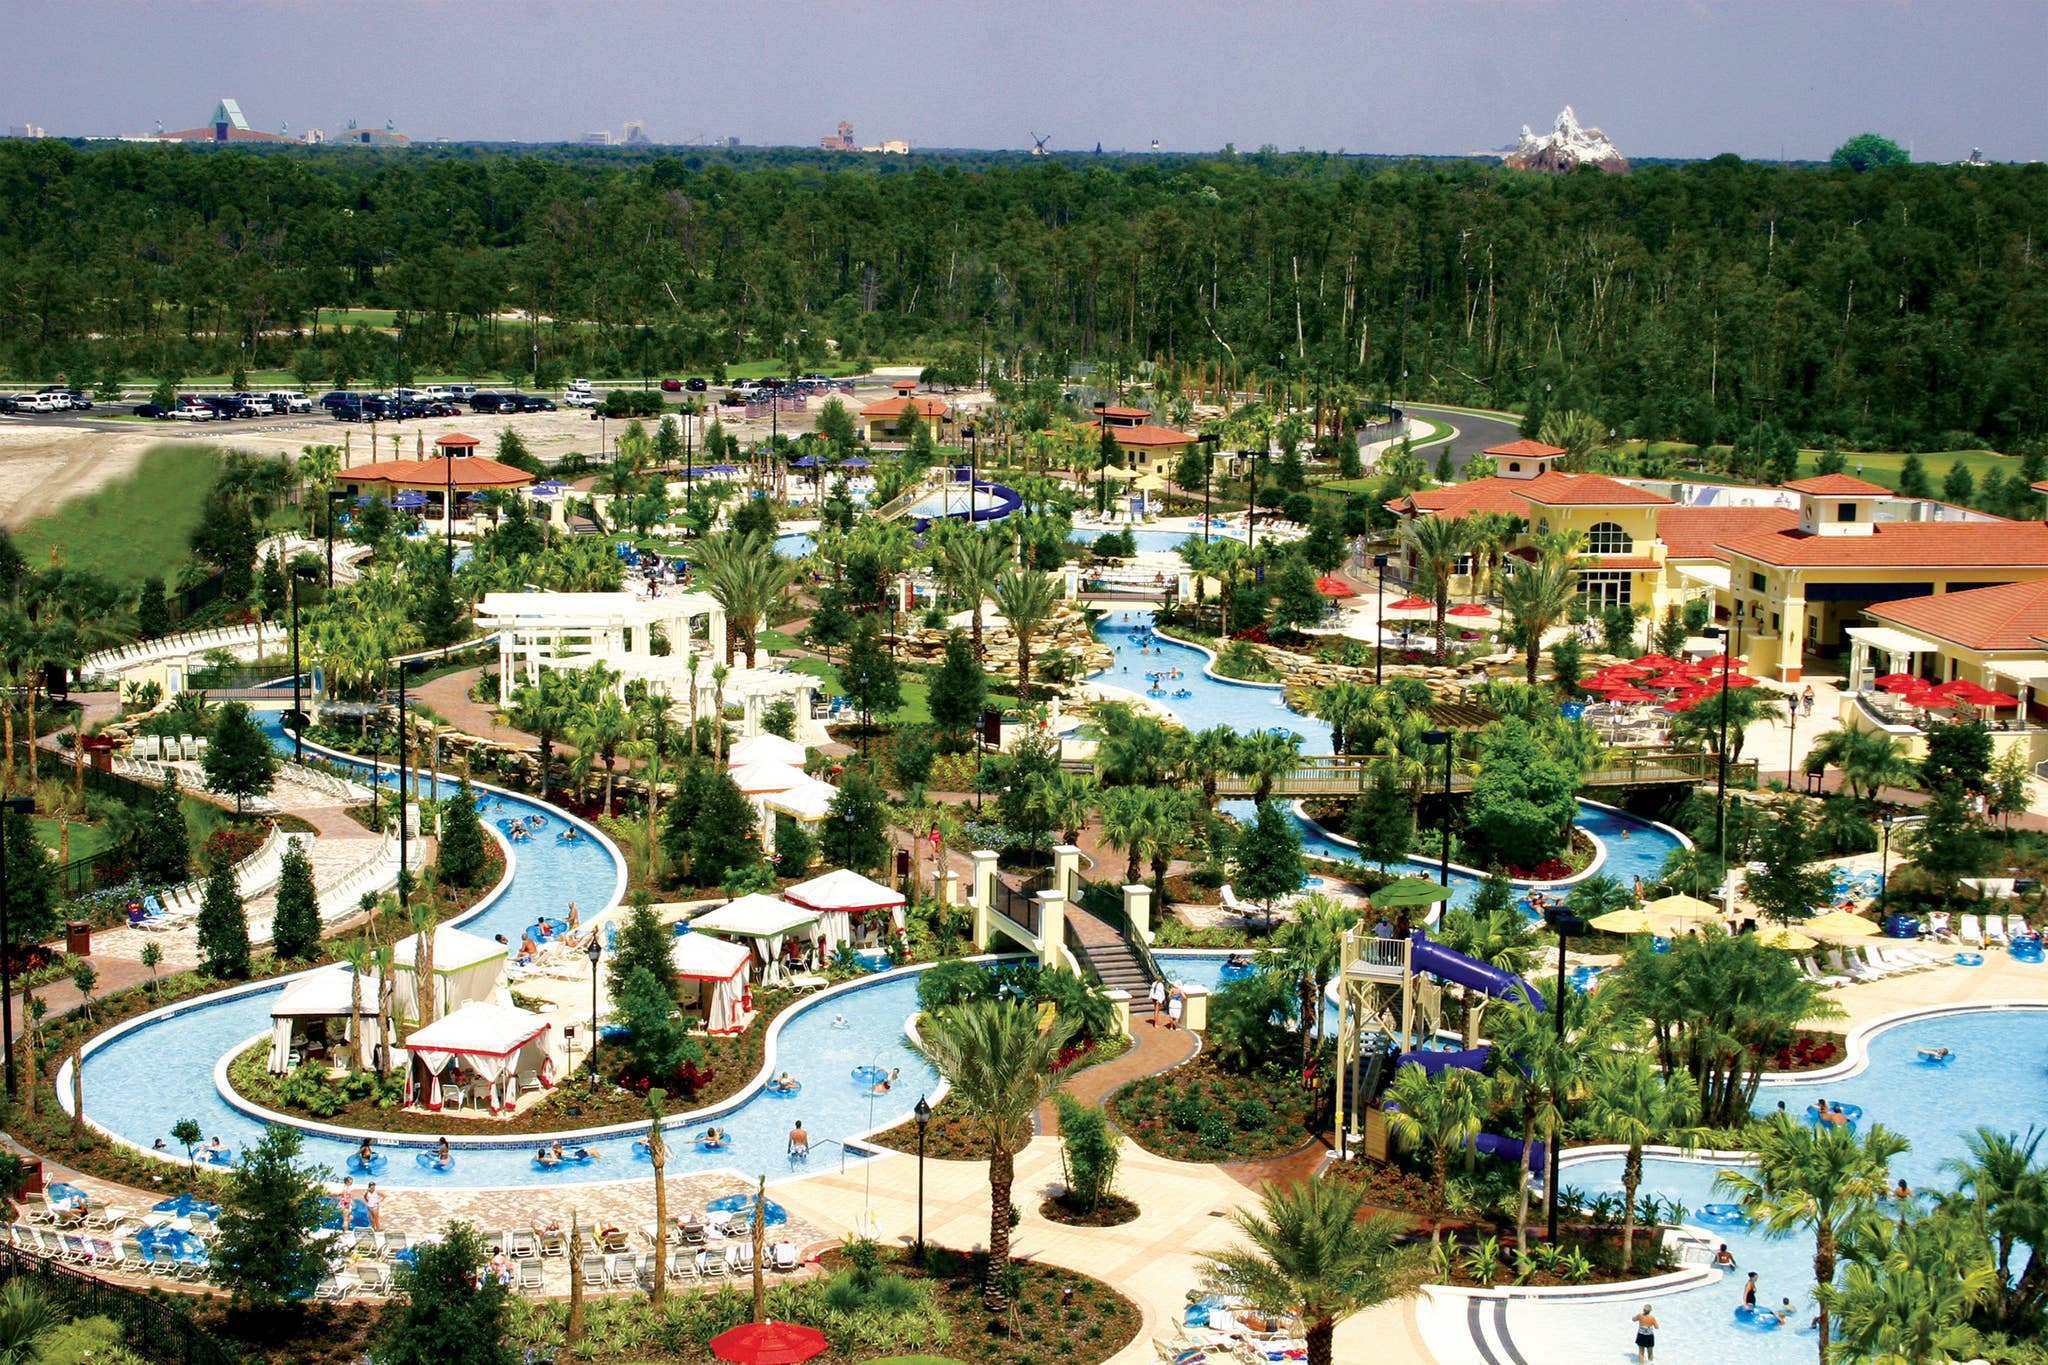 6 Reasons to Take a Summer Family Vacation at Orange Lake Resort